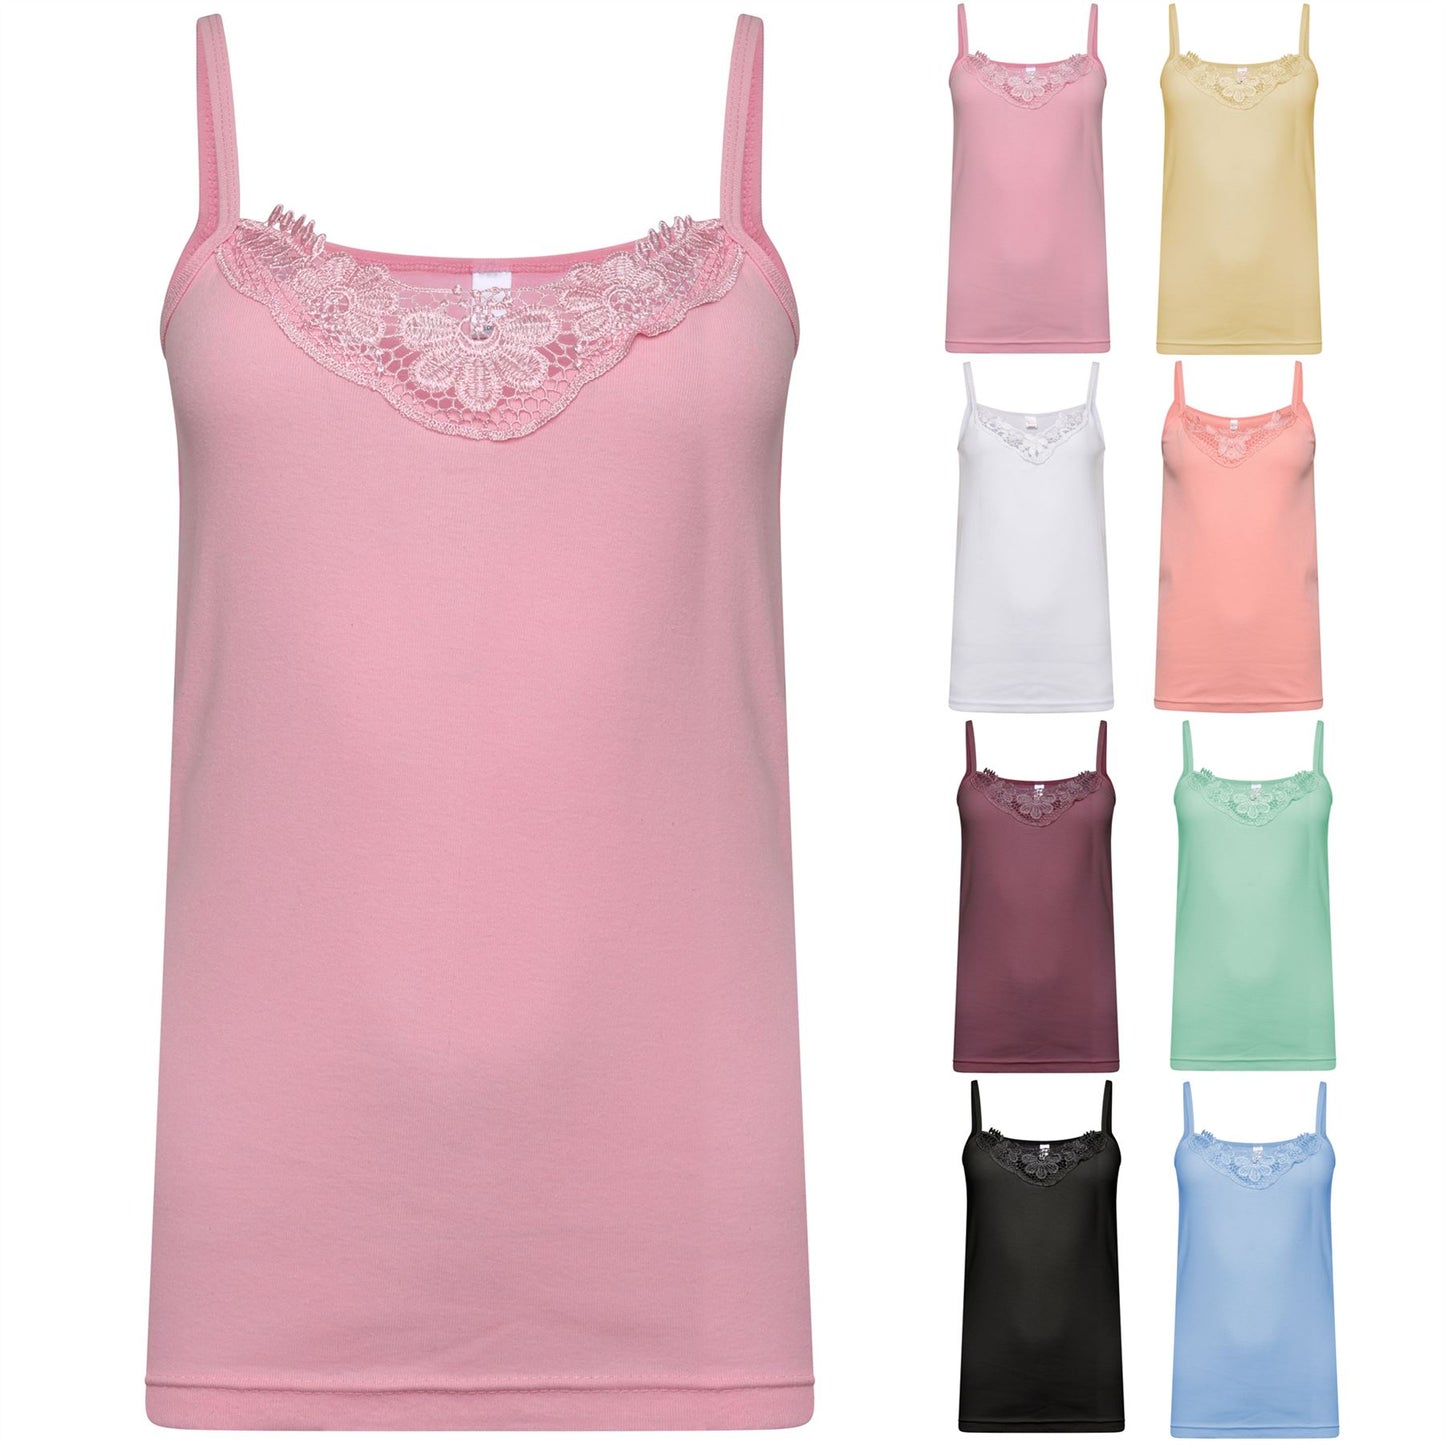 Ladies Plain Cotton Vest Top Lace Trim Neck Design Cami Tank Strappy Camisole